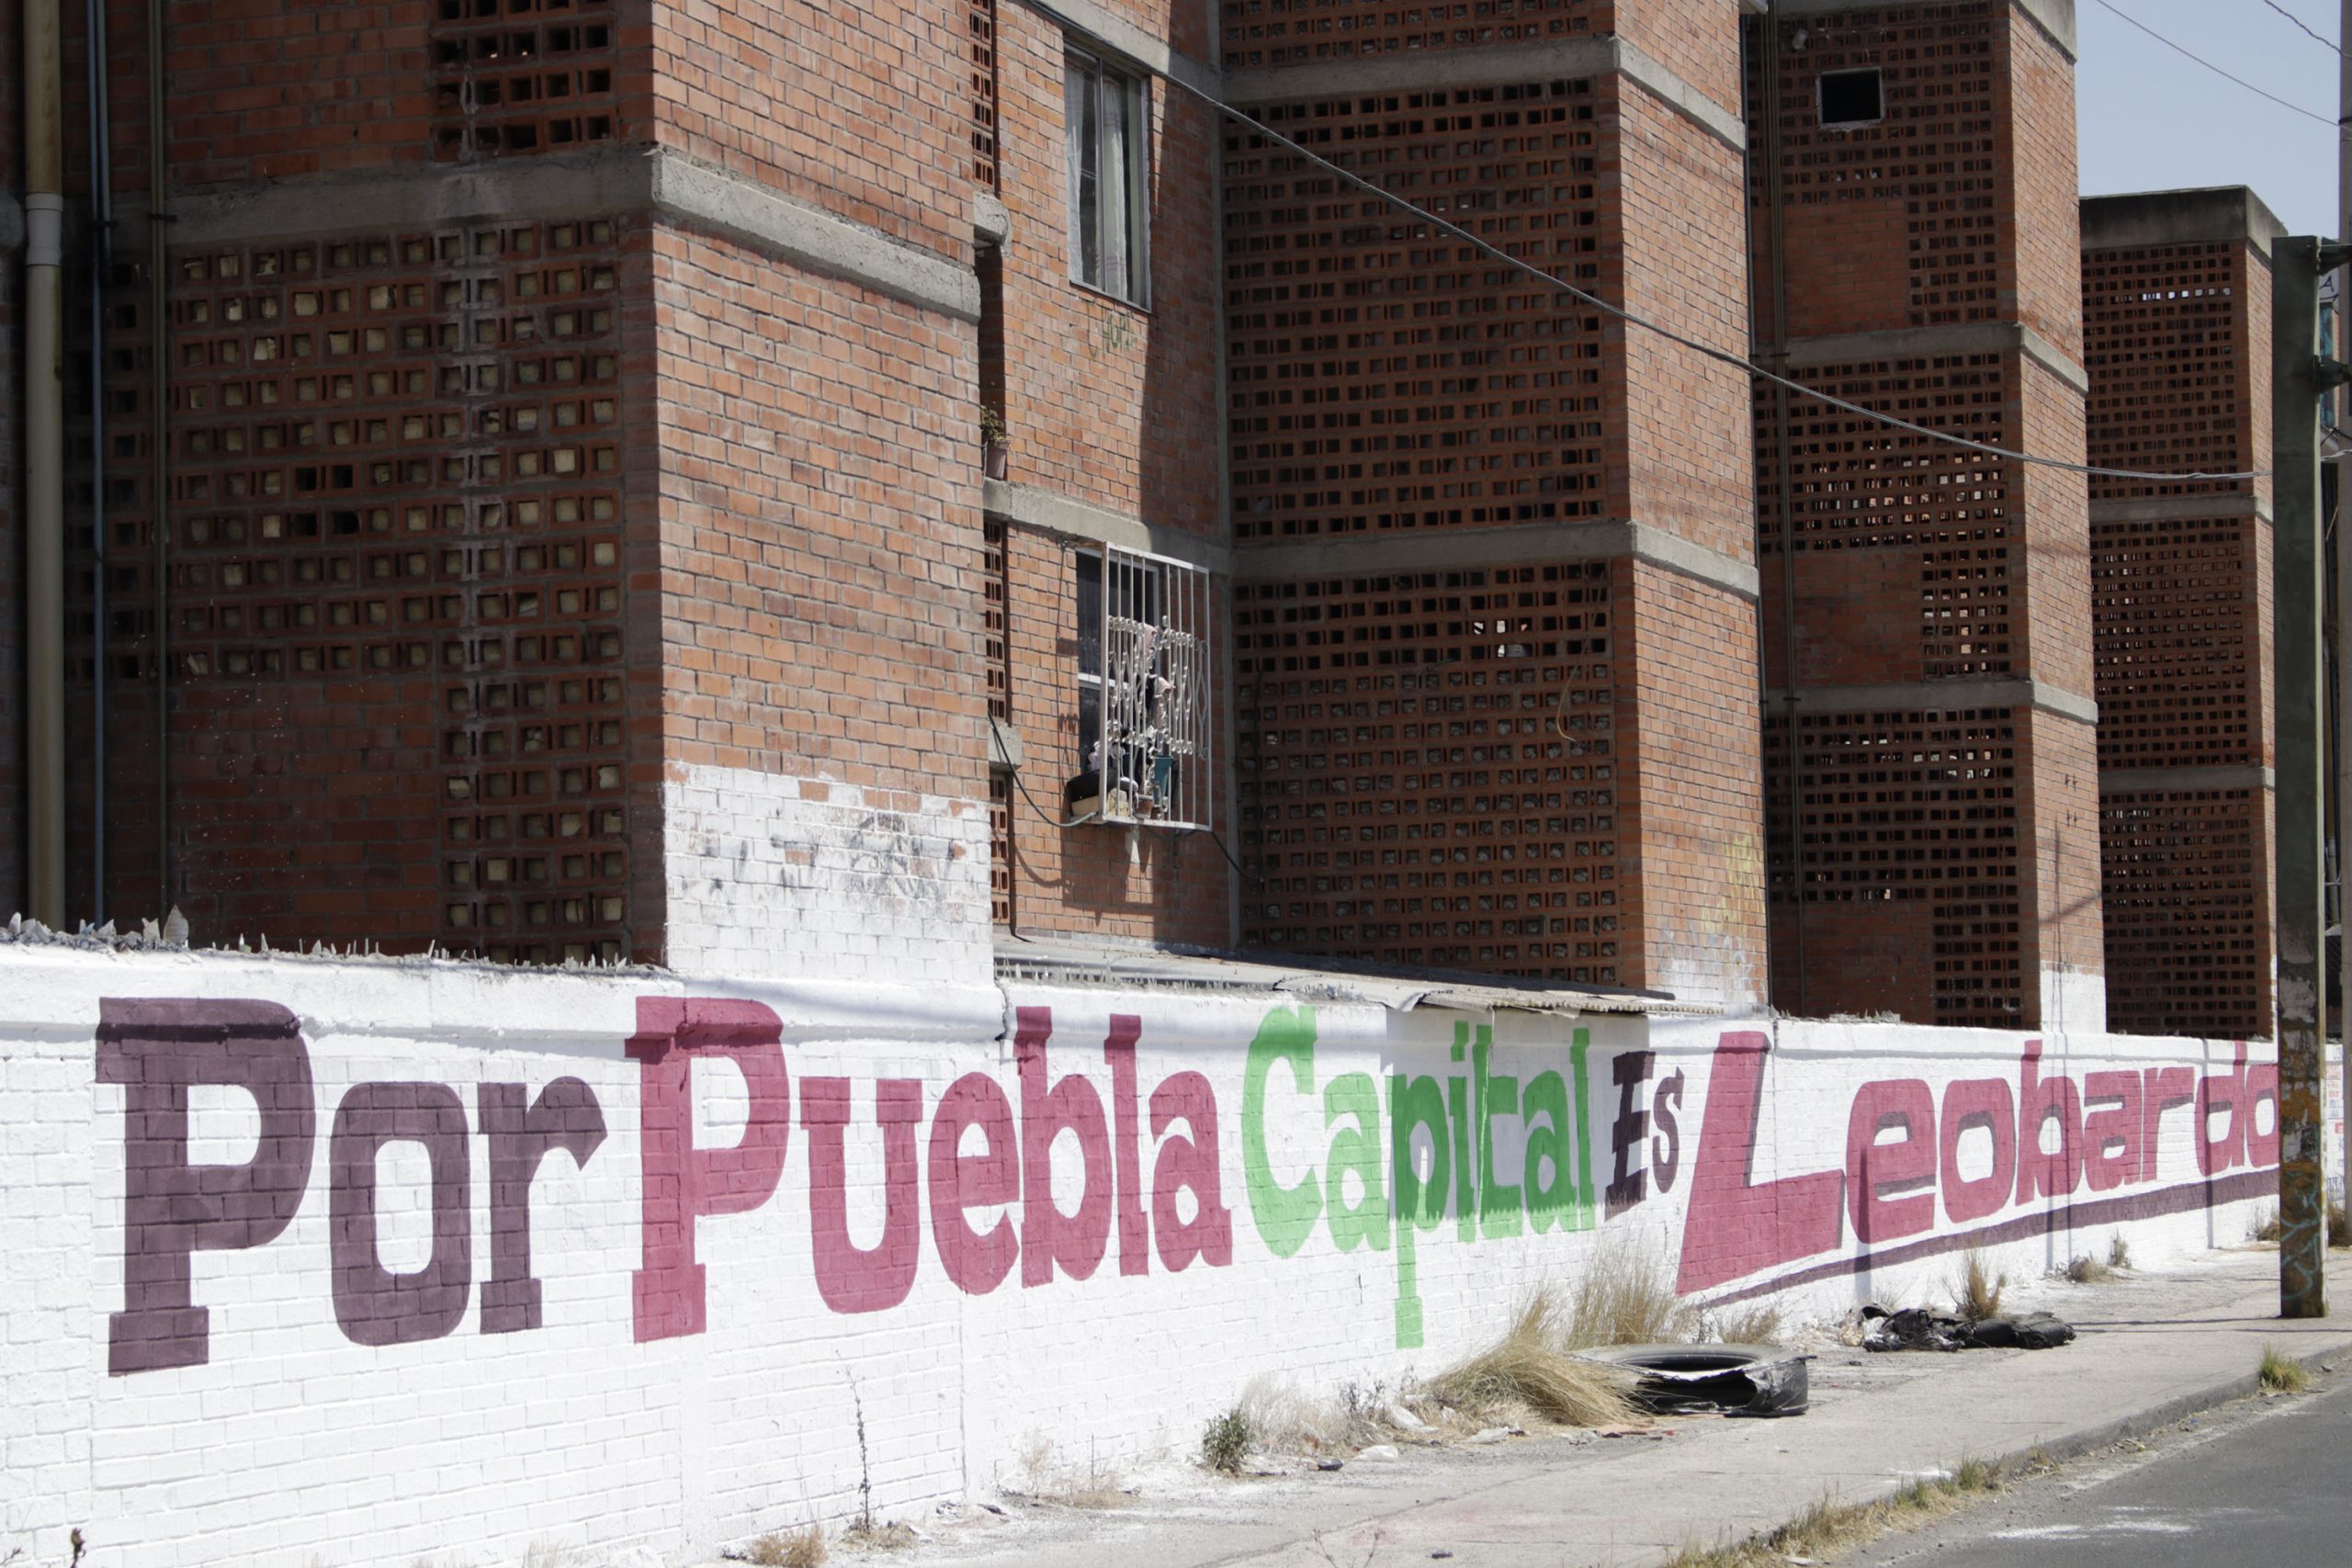 Presentarán denuncias por daños a mobiliario urbano en Puebla